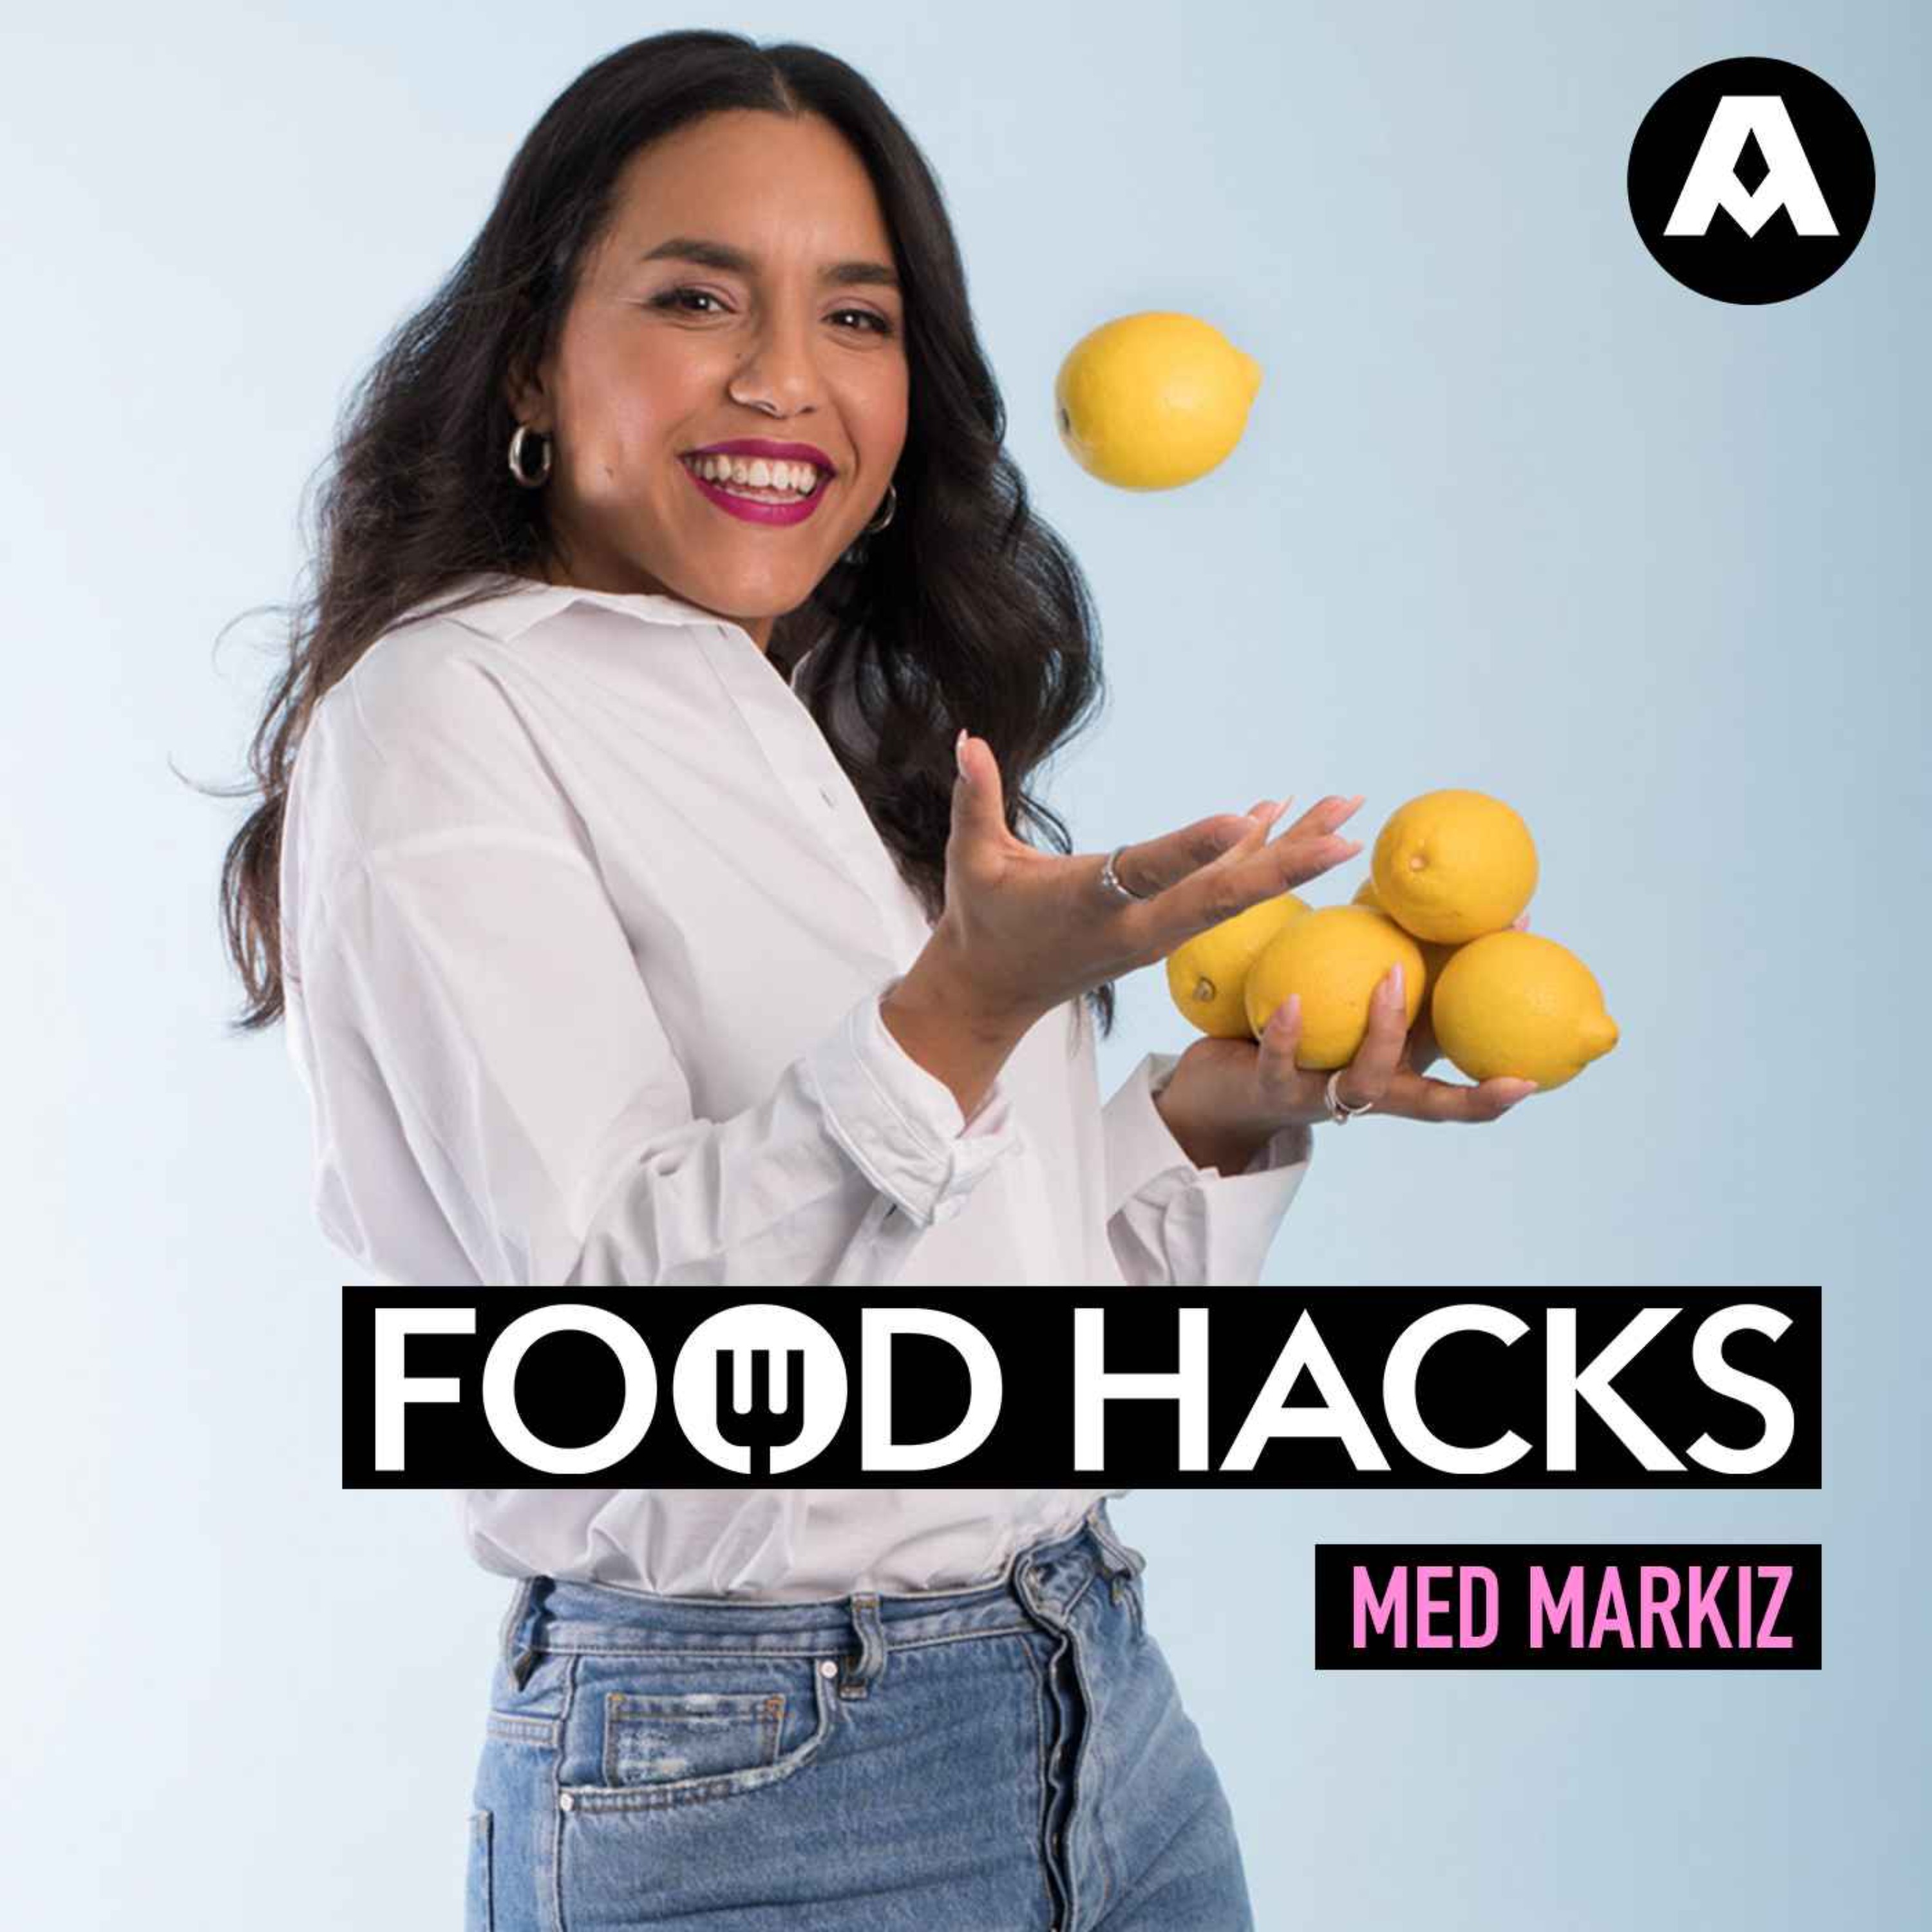 Food hacks: Det här ska du äta i februari!